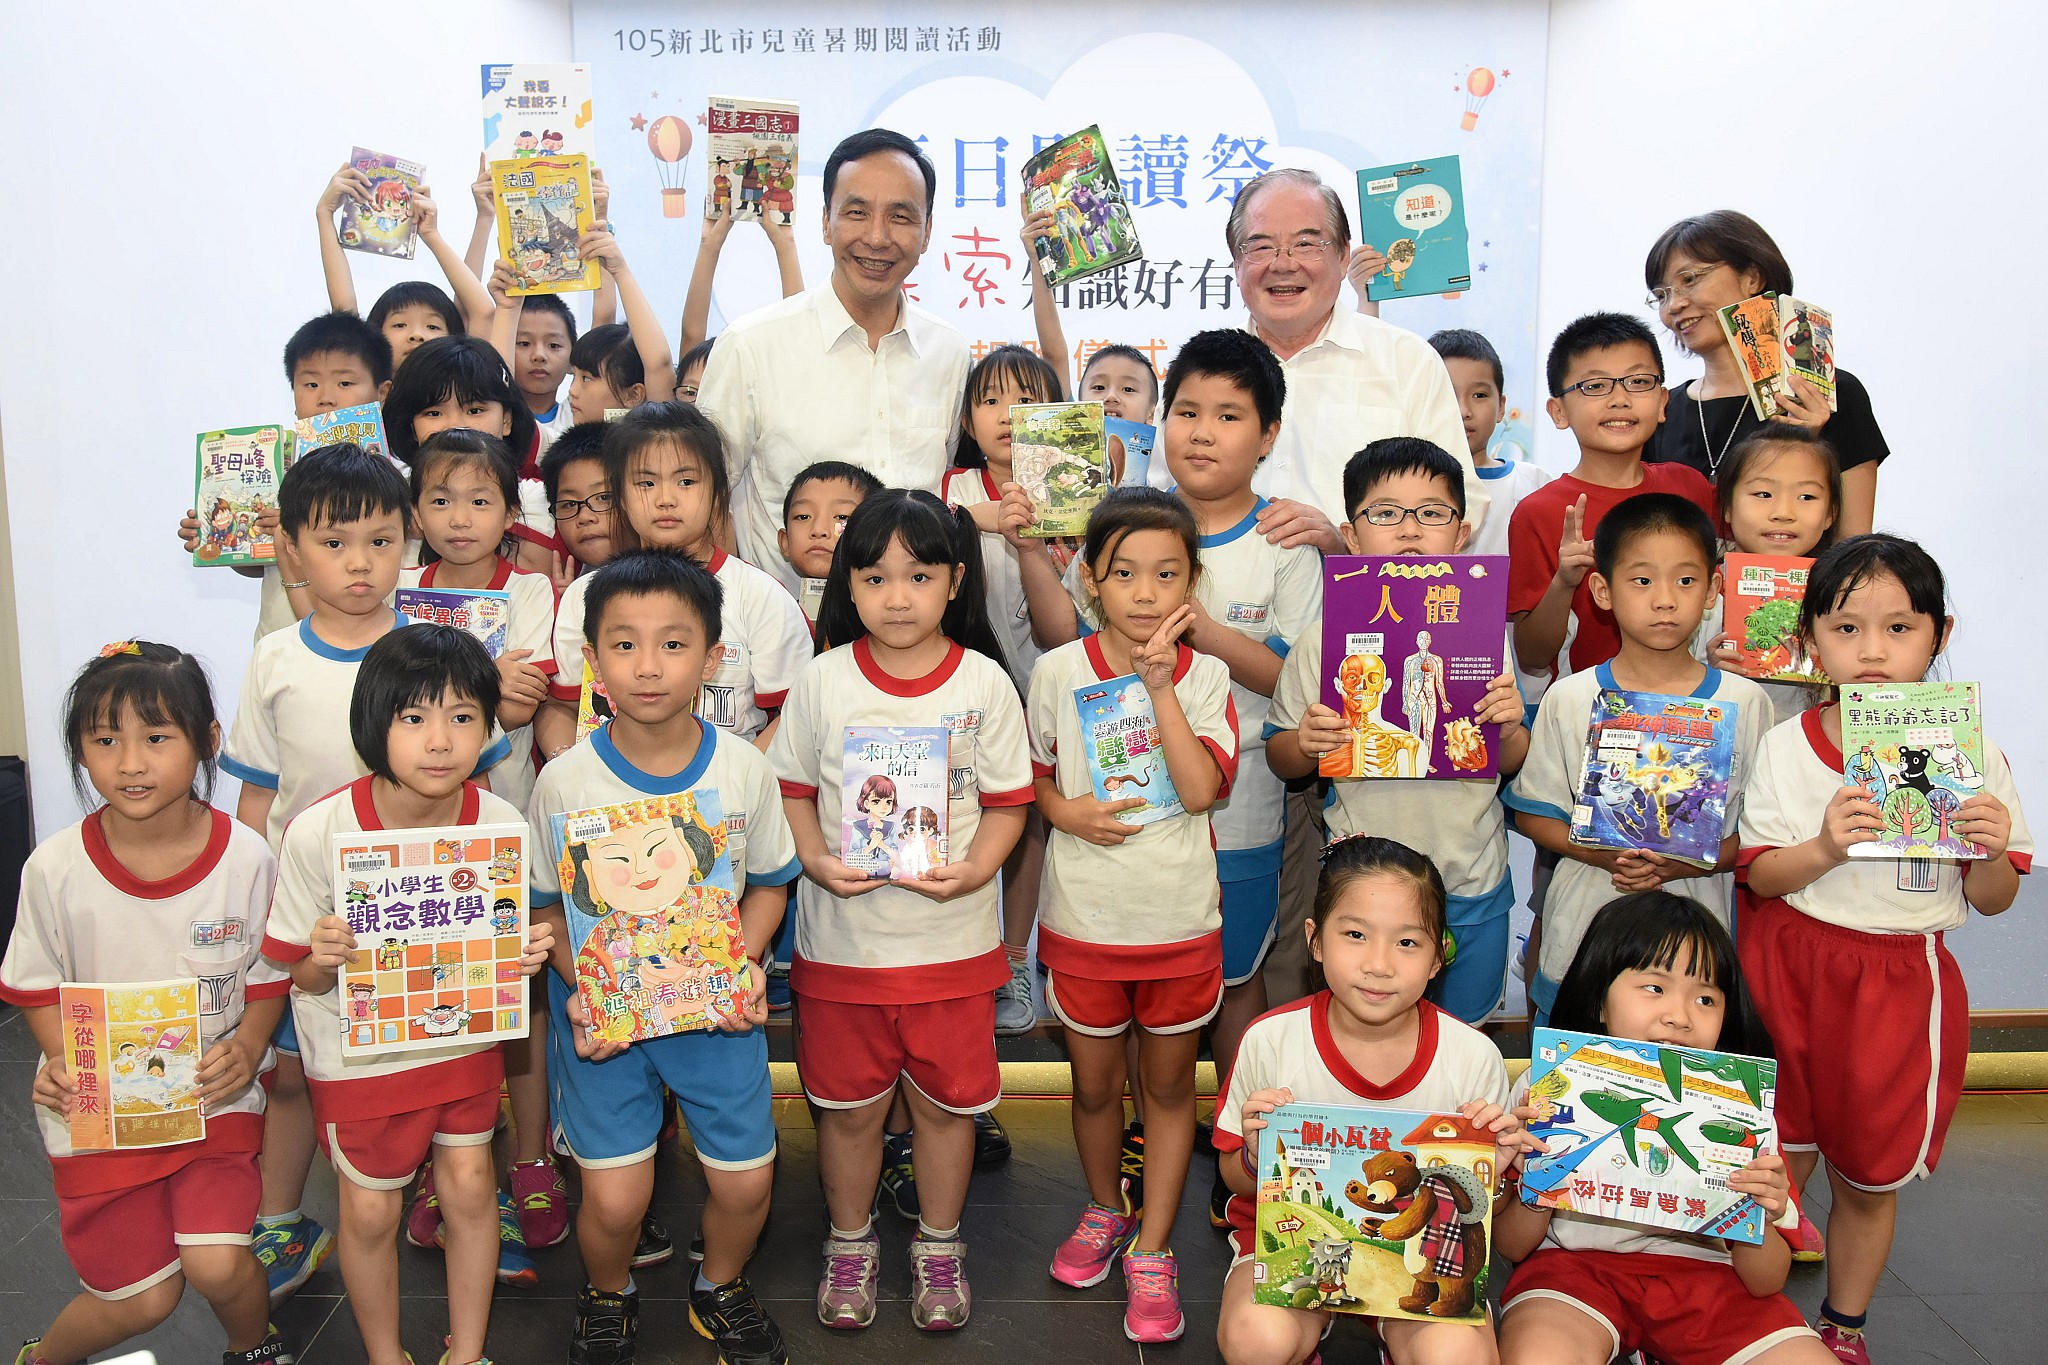 夏日閱讀祭兒童暑期閱讀活動起跑DSC_8651.JPG